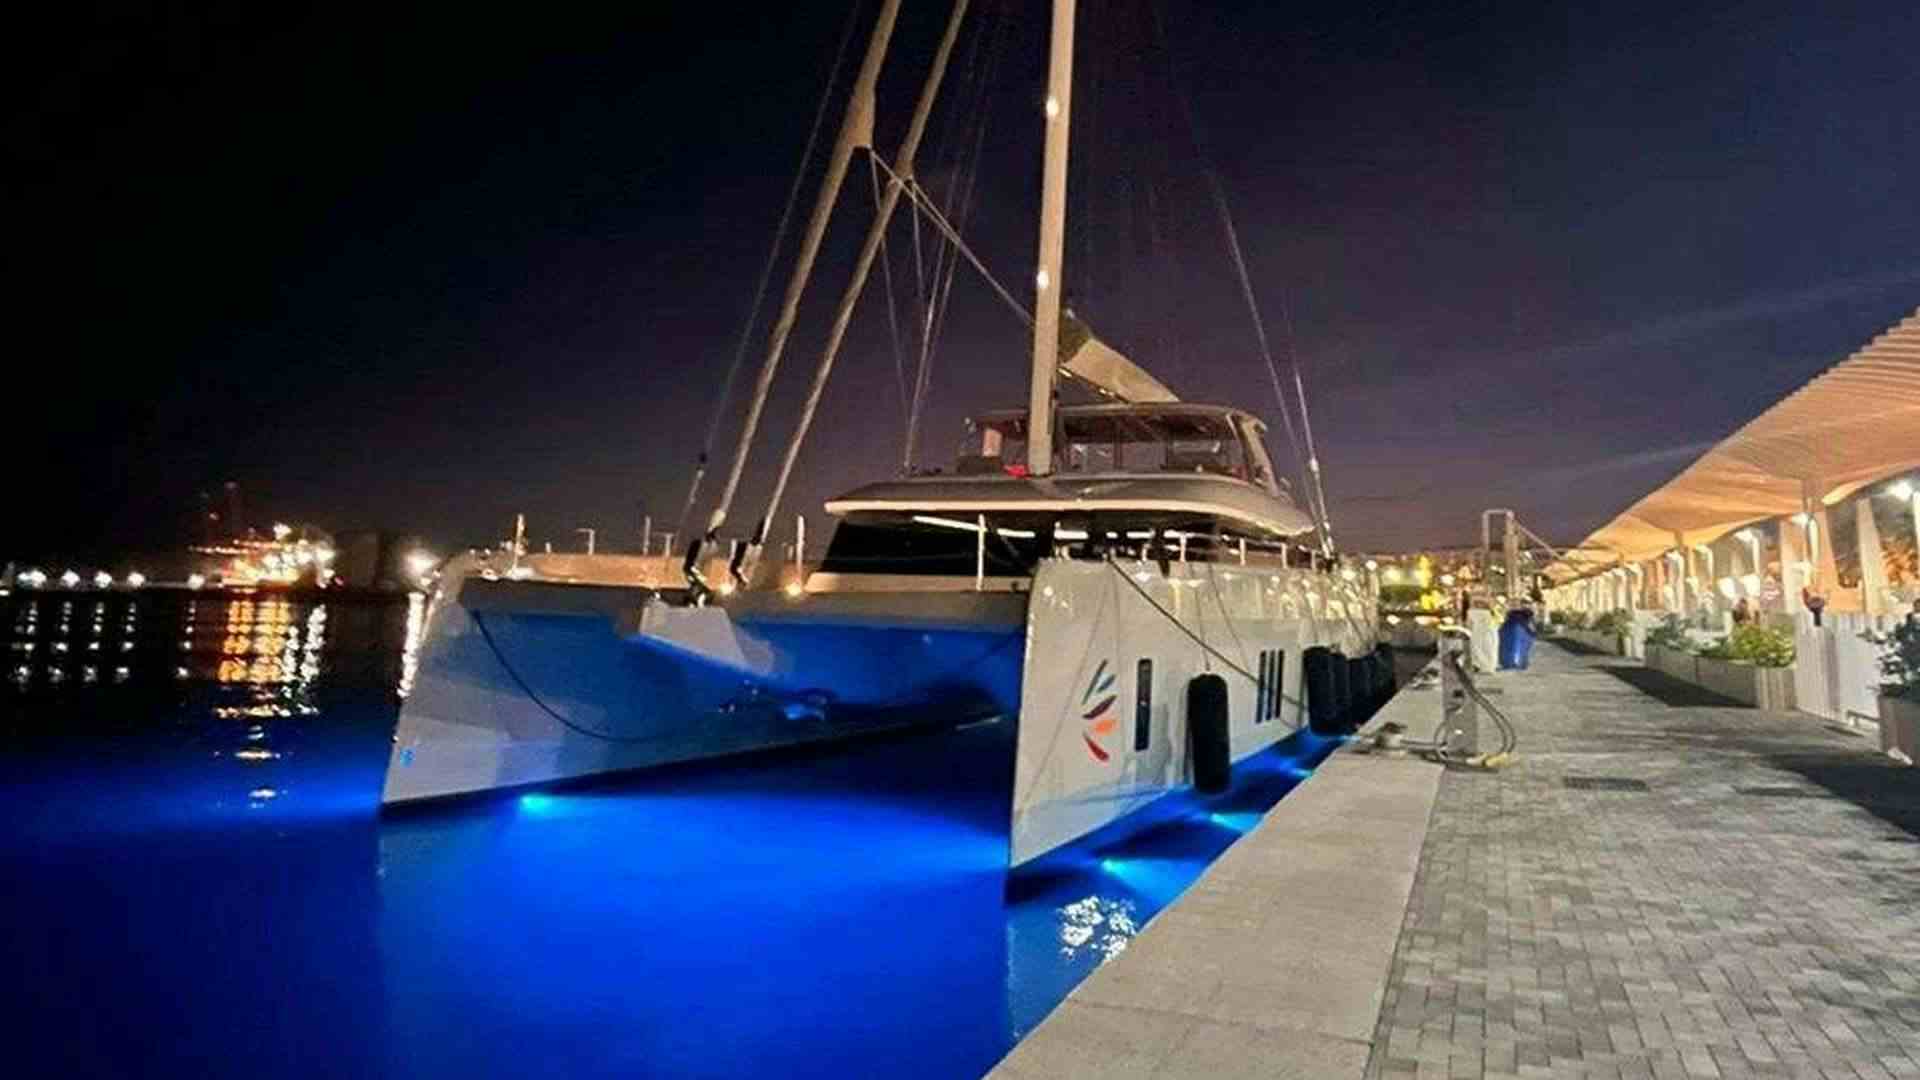 VIVA LA VIDA - Catamaran Charter Corsica & Boat hire in Riviera, Corsica, Sardinia, Caribbean 1